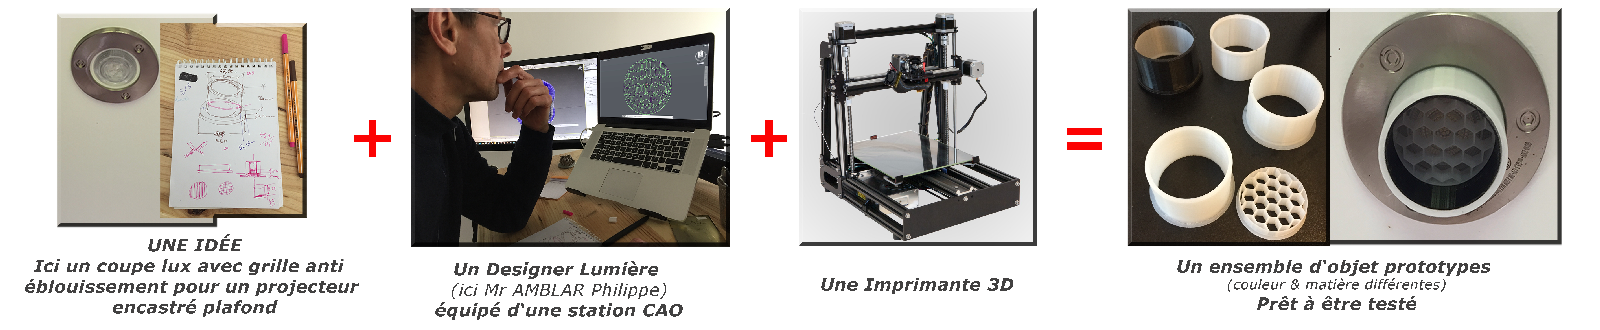 Un nouveau type d'imprimante 3D permet de façonner les objets grâce à la  lumière